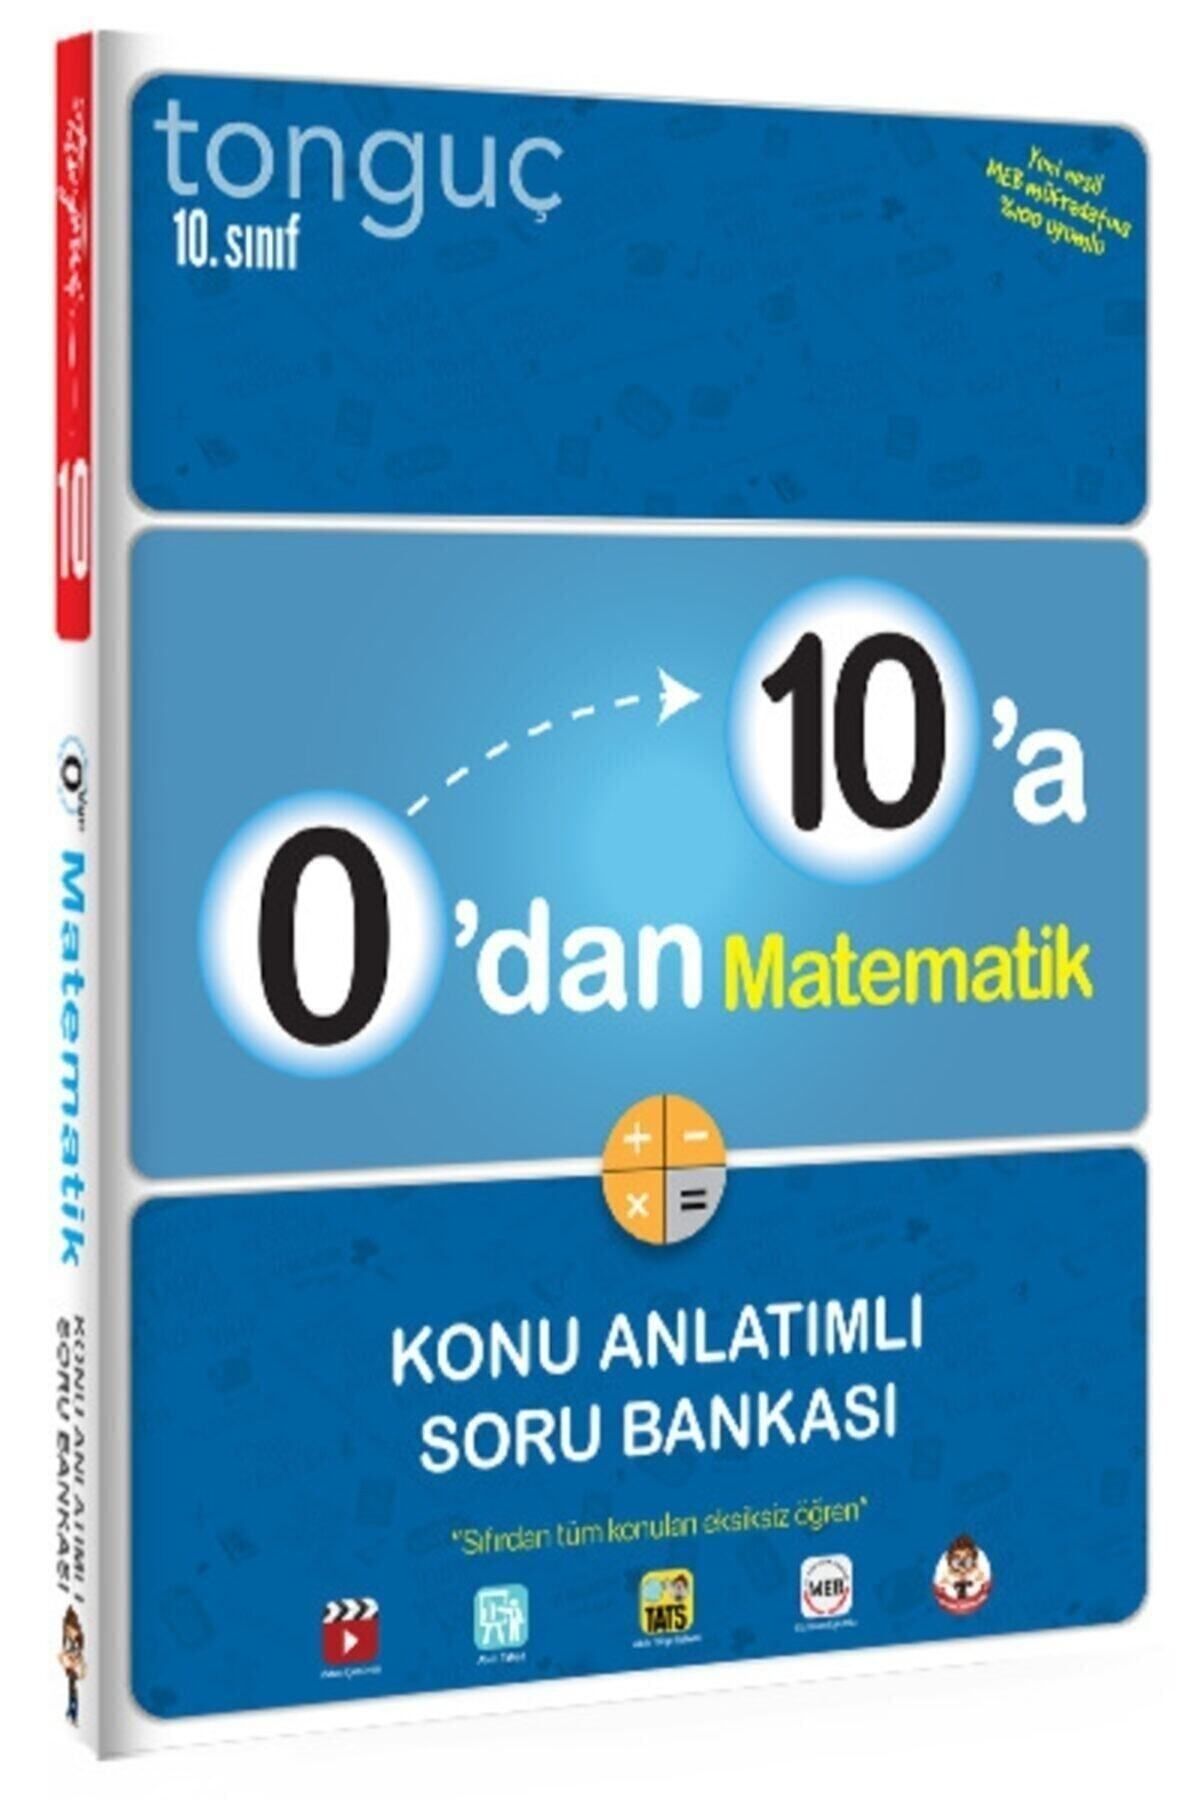 Tonguç Yayınları Tonguç 10, Sınıf 0 Dan 10 A Matematik Konu Anlatımlı Soru Bankası